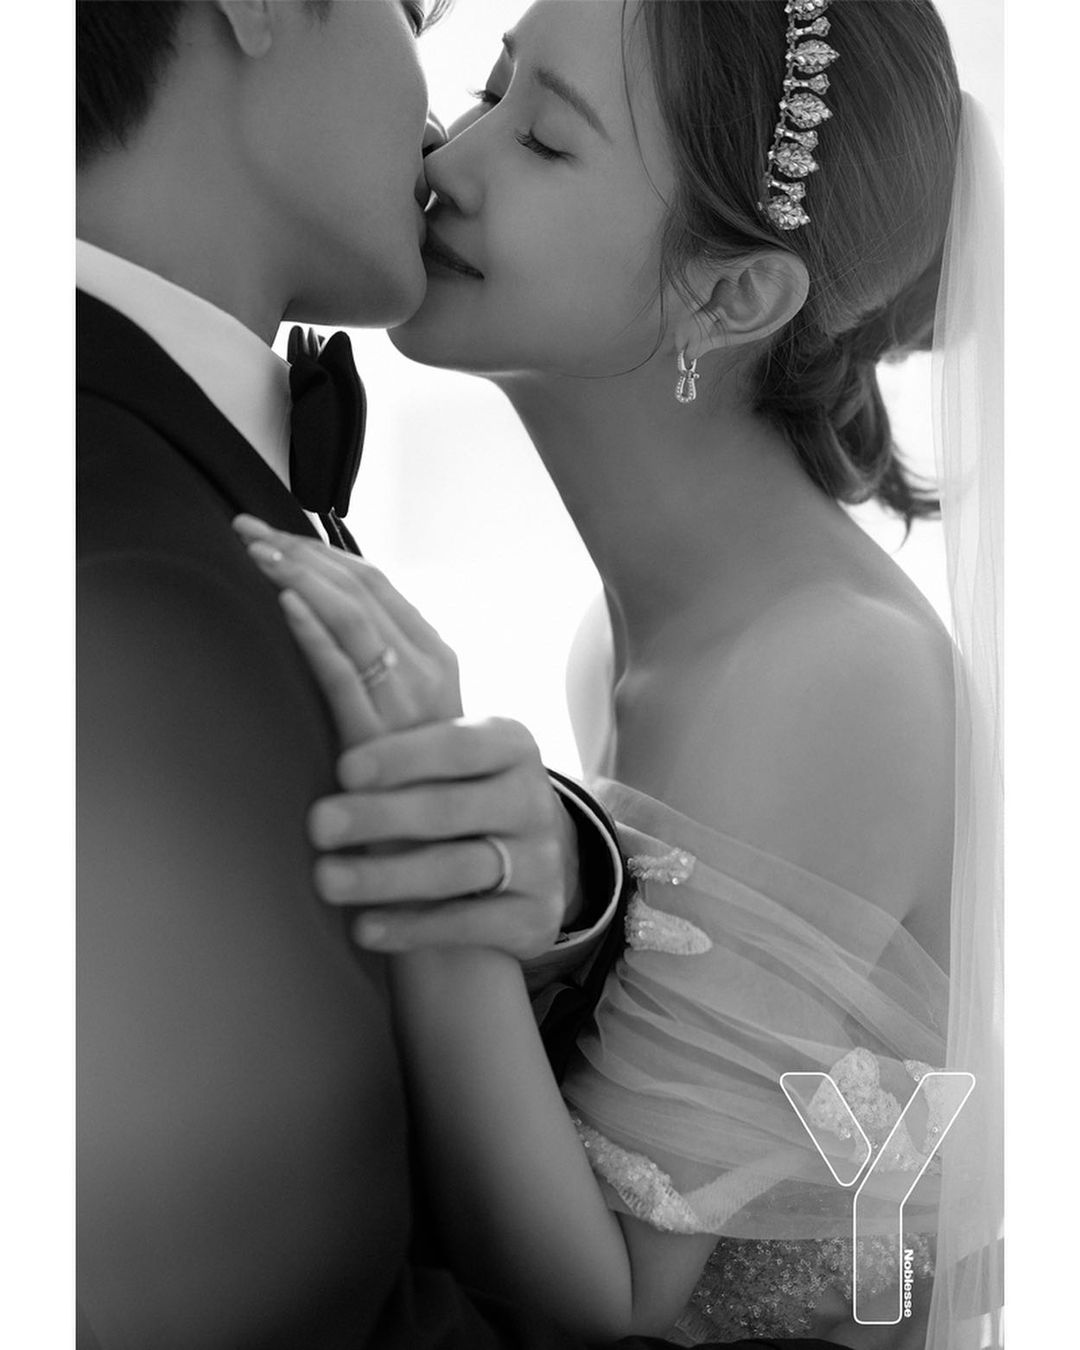 Lee Da Hae - Se7en chính thức xả ảnh cưới: Hình 'khóa môi' chiếm ...